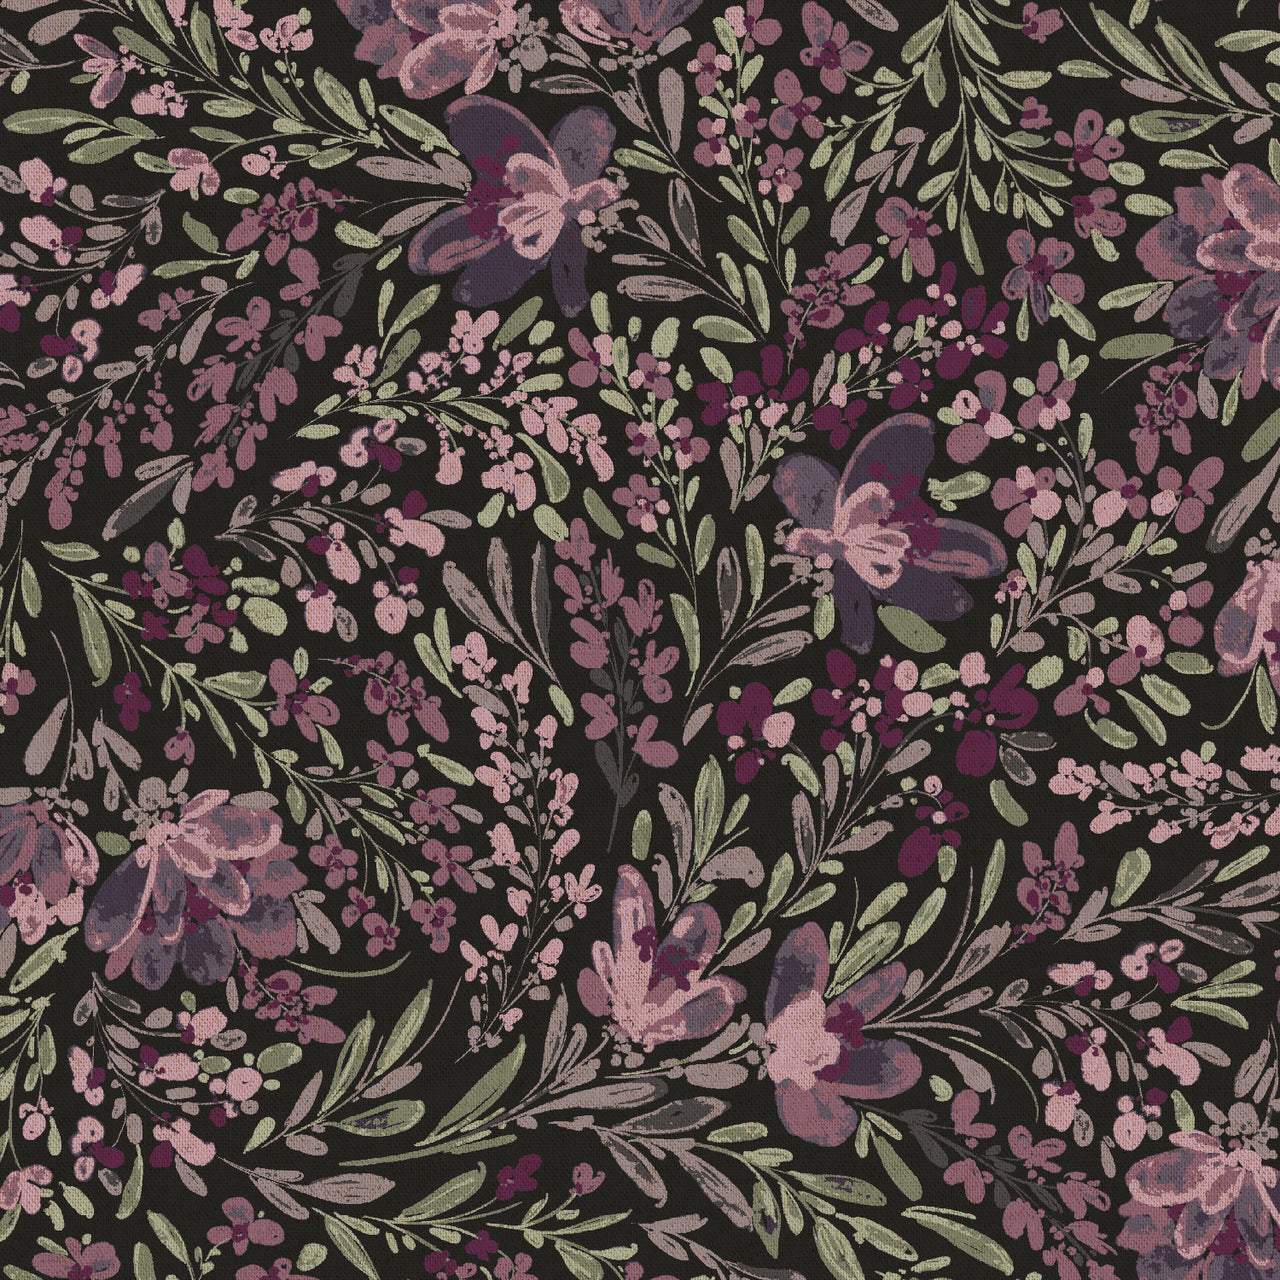 Butterflies in the Garden : Flowers in the Breeze in Imperial Purple : RJR : Canvas